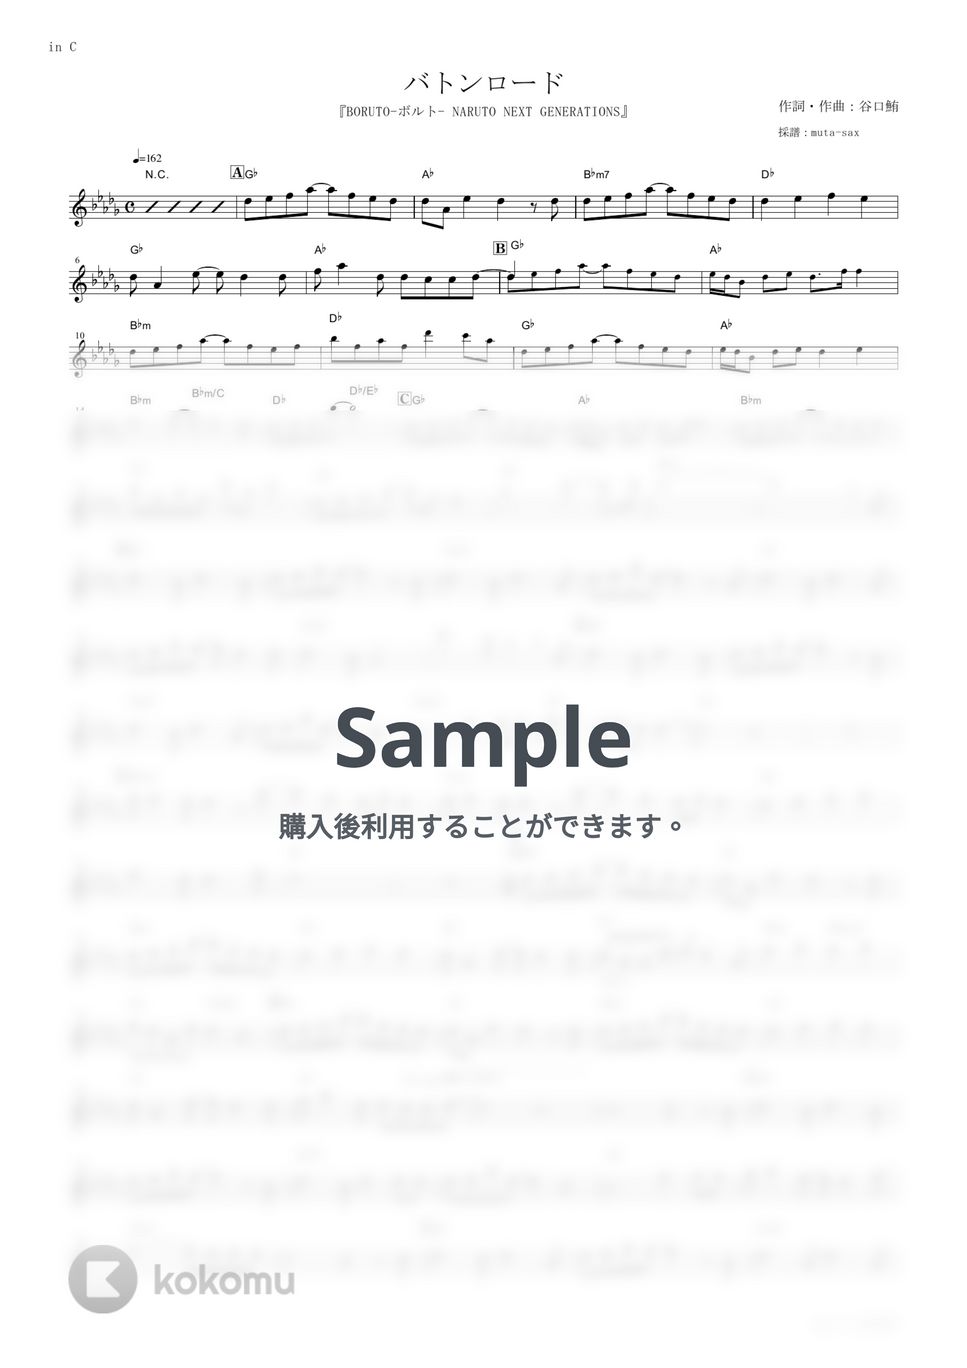 KANA-BOON - バトンロード (『BORUTO-ボルト- NARUTO NEXT GENERATIONS』 / in C) by muta-sax